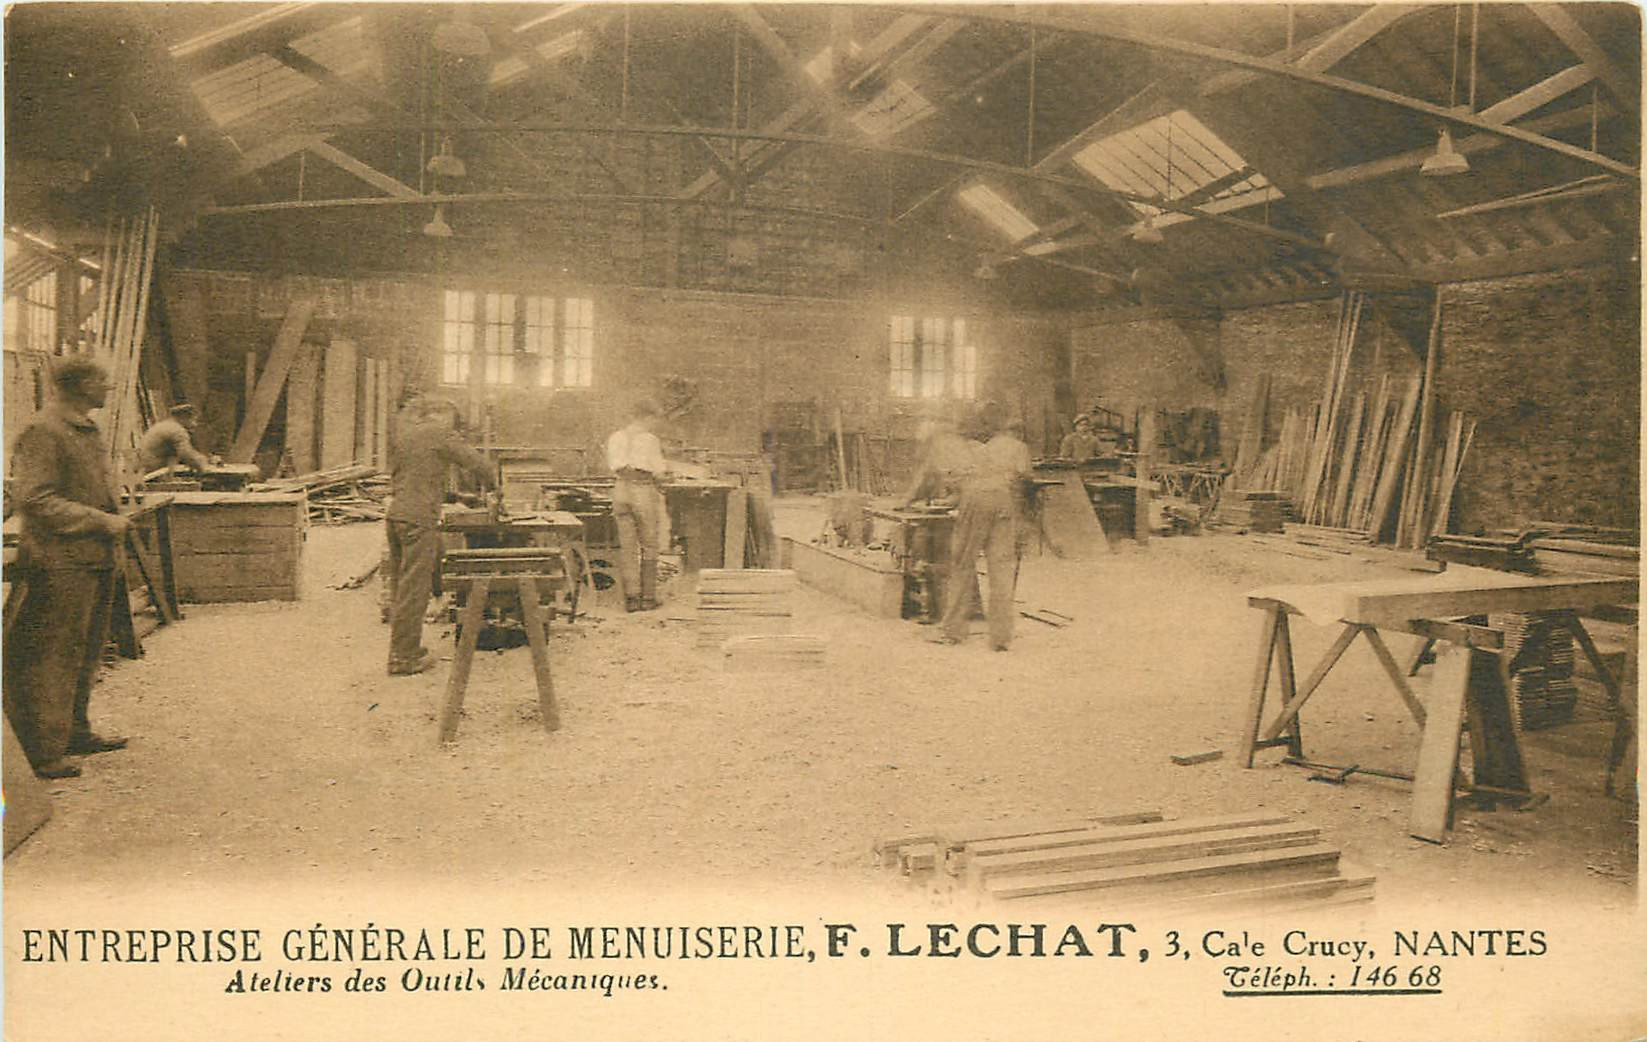 WW 44 NANTES. Ateliers outils mécaniques Entreprise de Menuiserie Lechat 3 Cale Cruzy